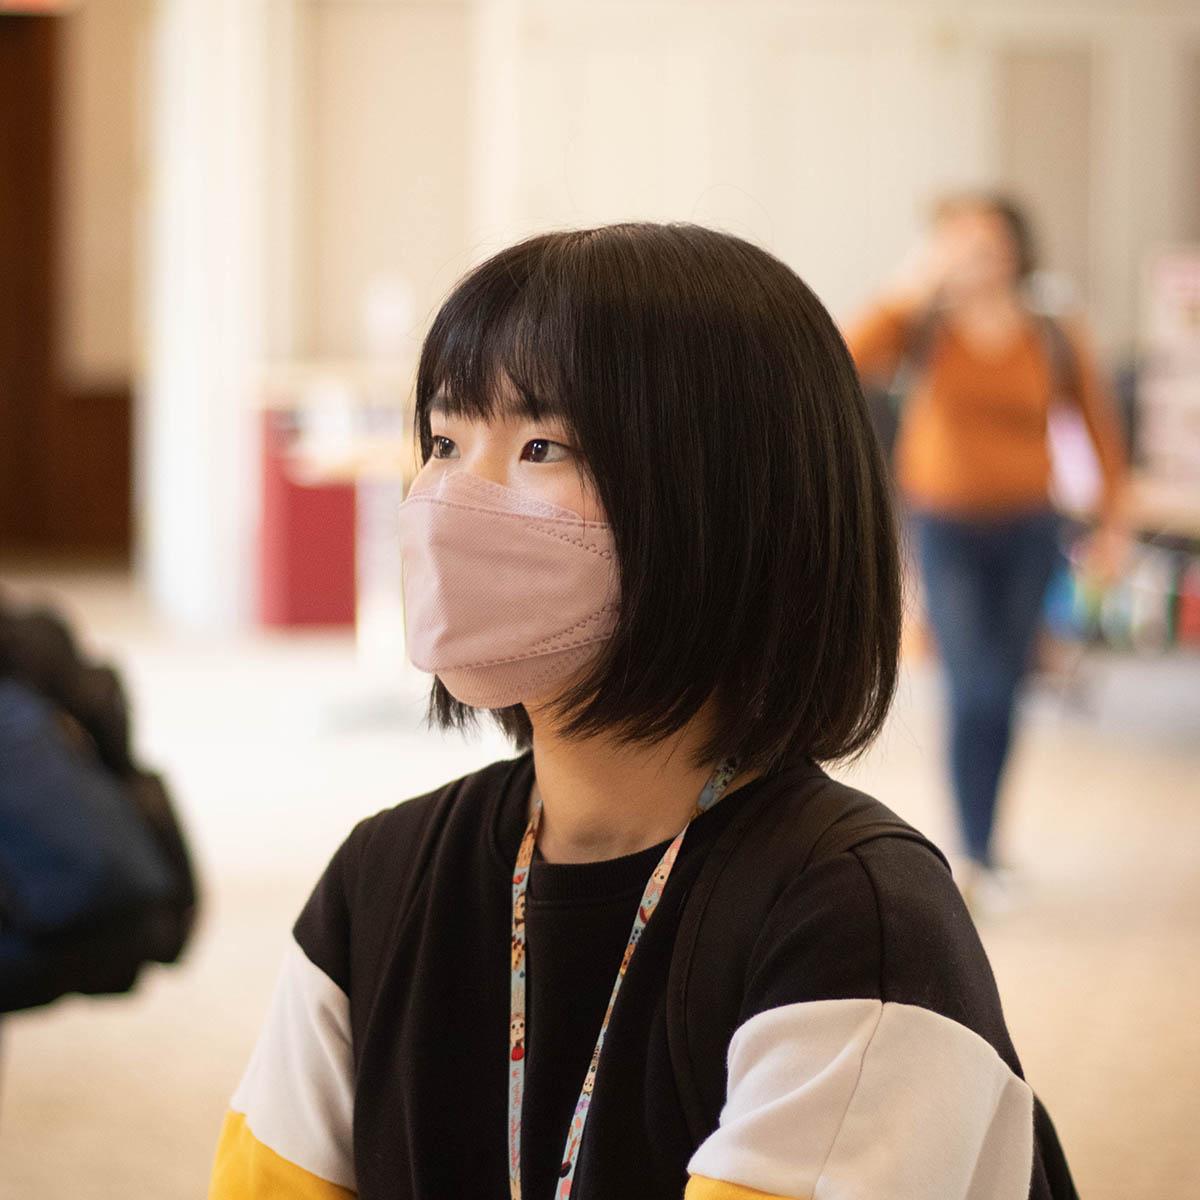 图为一名戴着口罩参加国际活动的学生